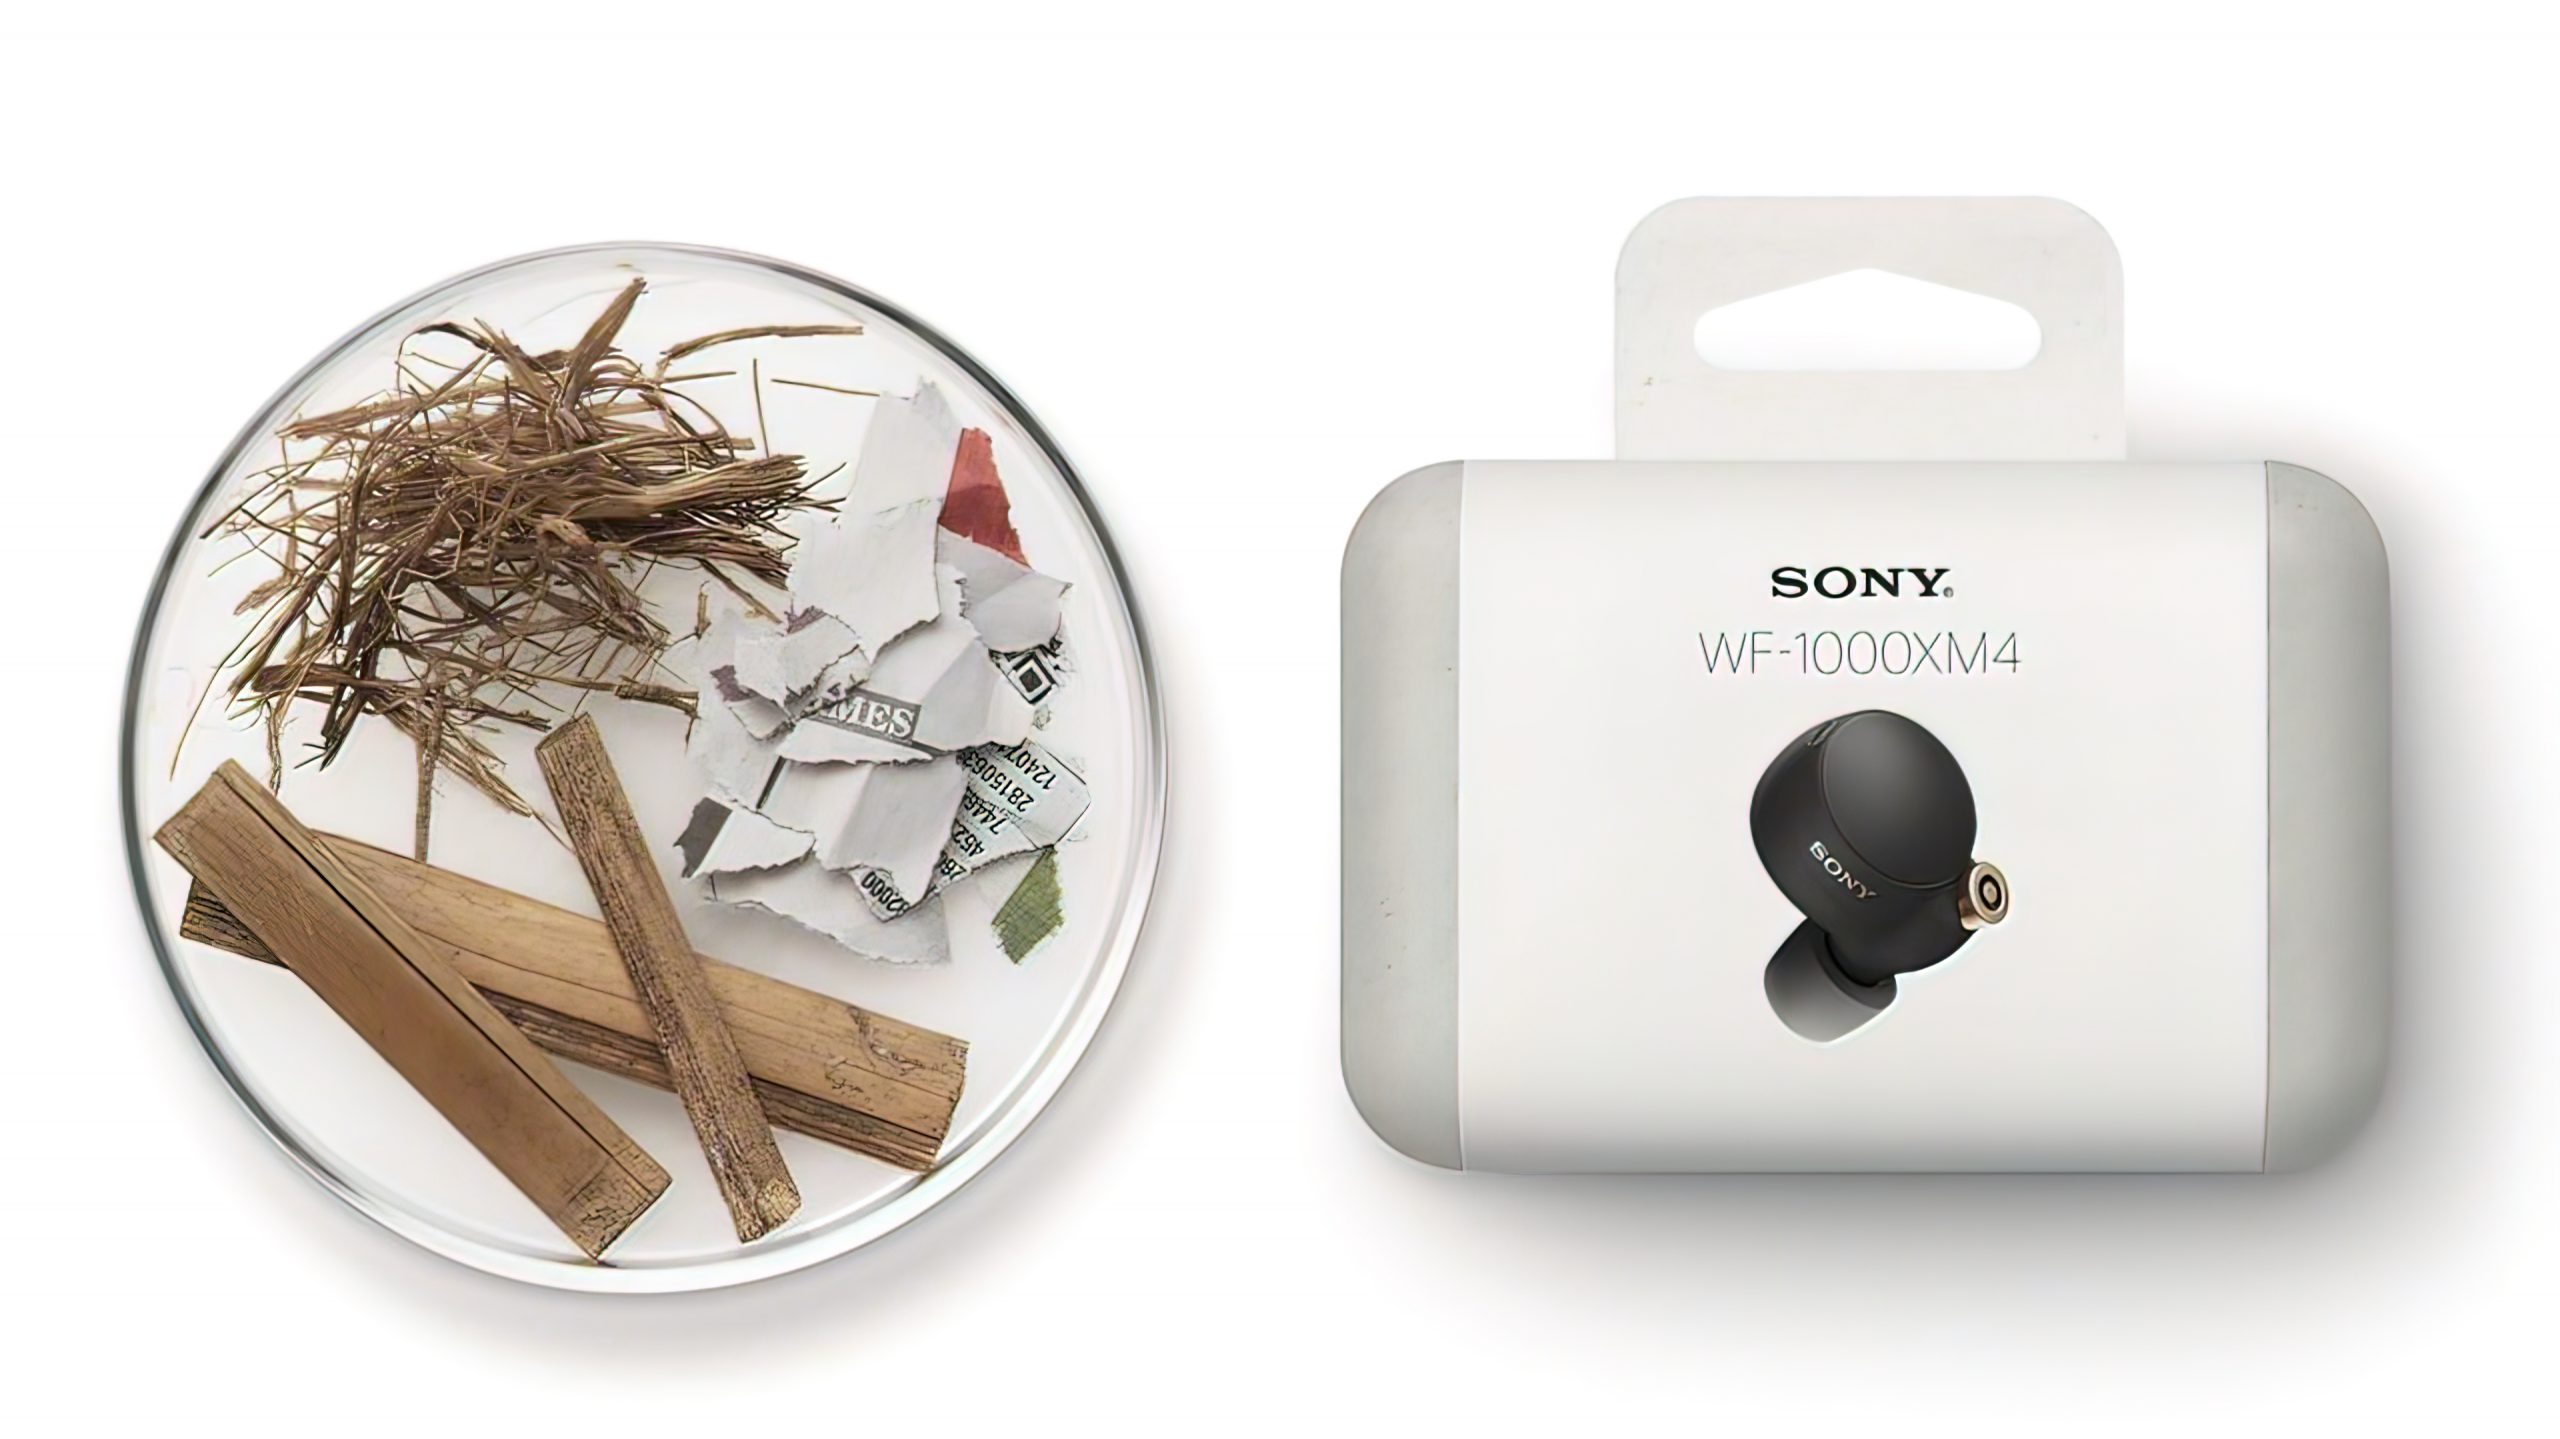 Review: Sony WF-1000XM4 | Sony's Best So Far